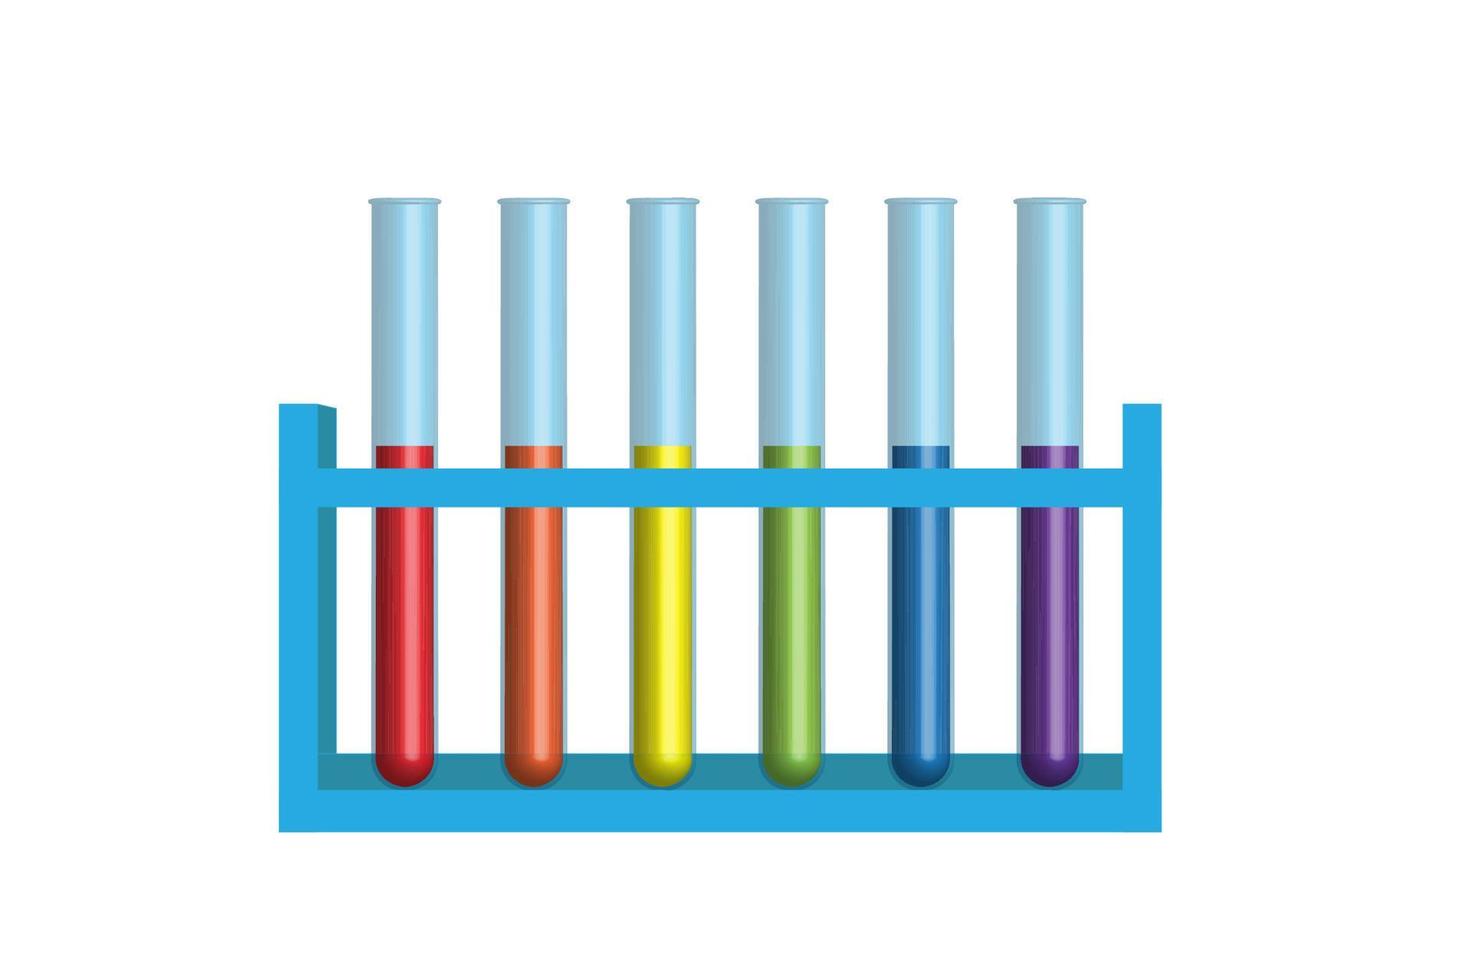 veelkleurig laboratorium 3d test buizen fles glaswerk voor test in chemie laboratorium vector